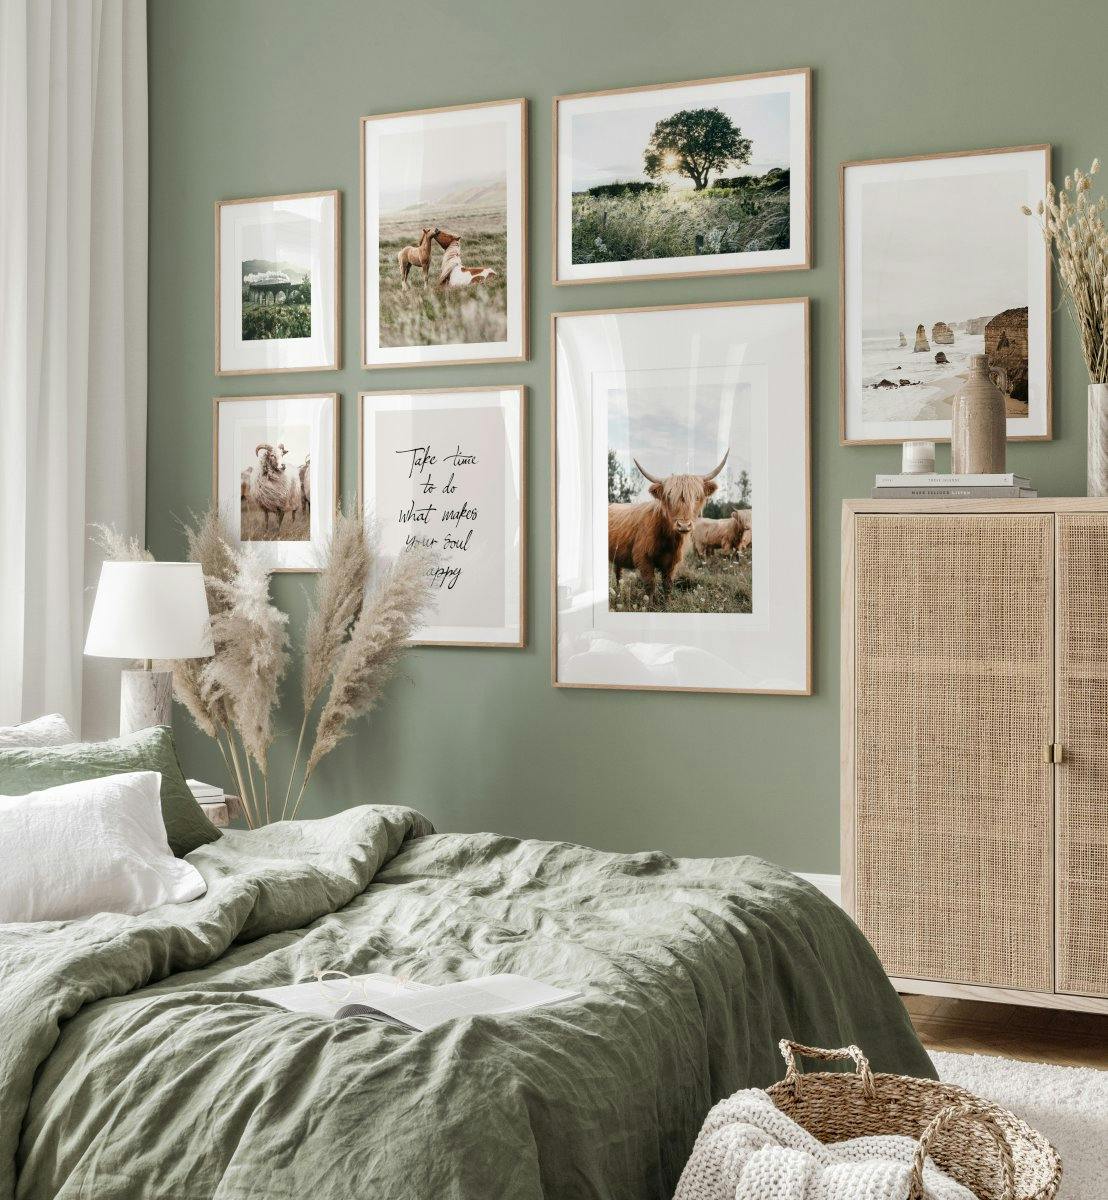 Schotse fotowand aan de muur groene slaapkamer hoogland koe poster eiken fotolijsten